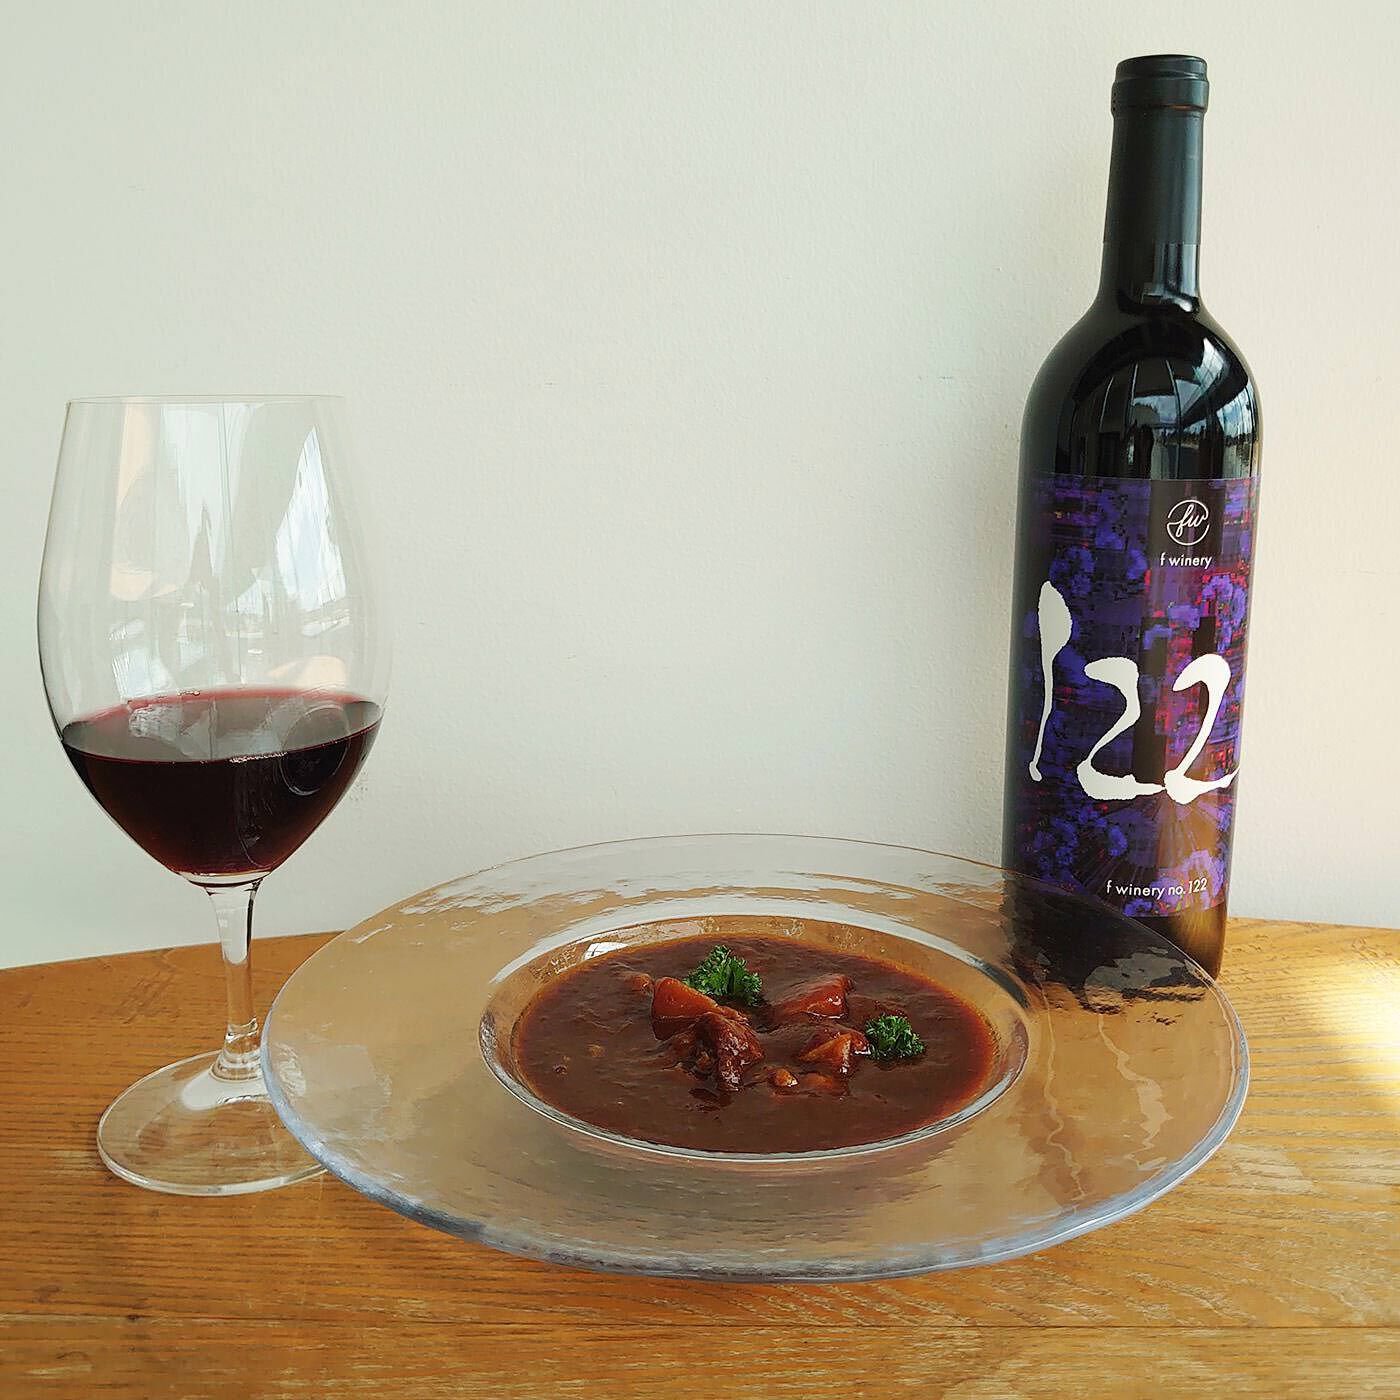 フェリシモコネクション|f winery122　シラーズ|力強いシラーズは肉料理、たとえば焼肉などとの相性がいよいです。日常ならカレーやビーフシチューで。